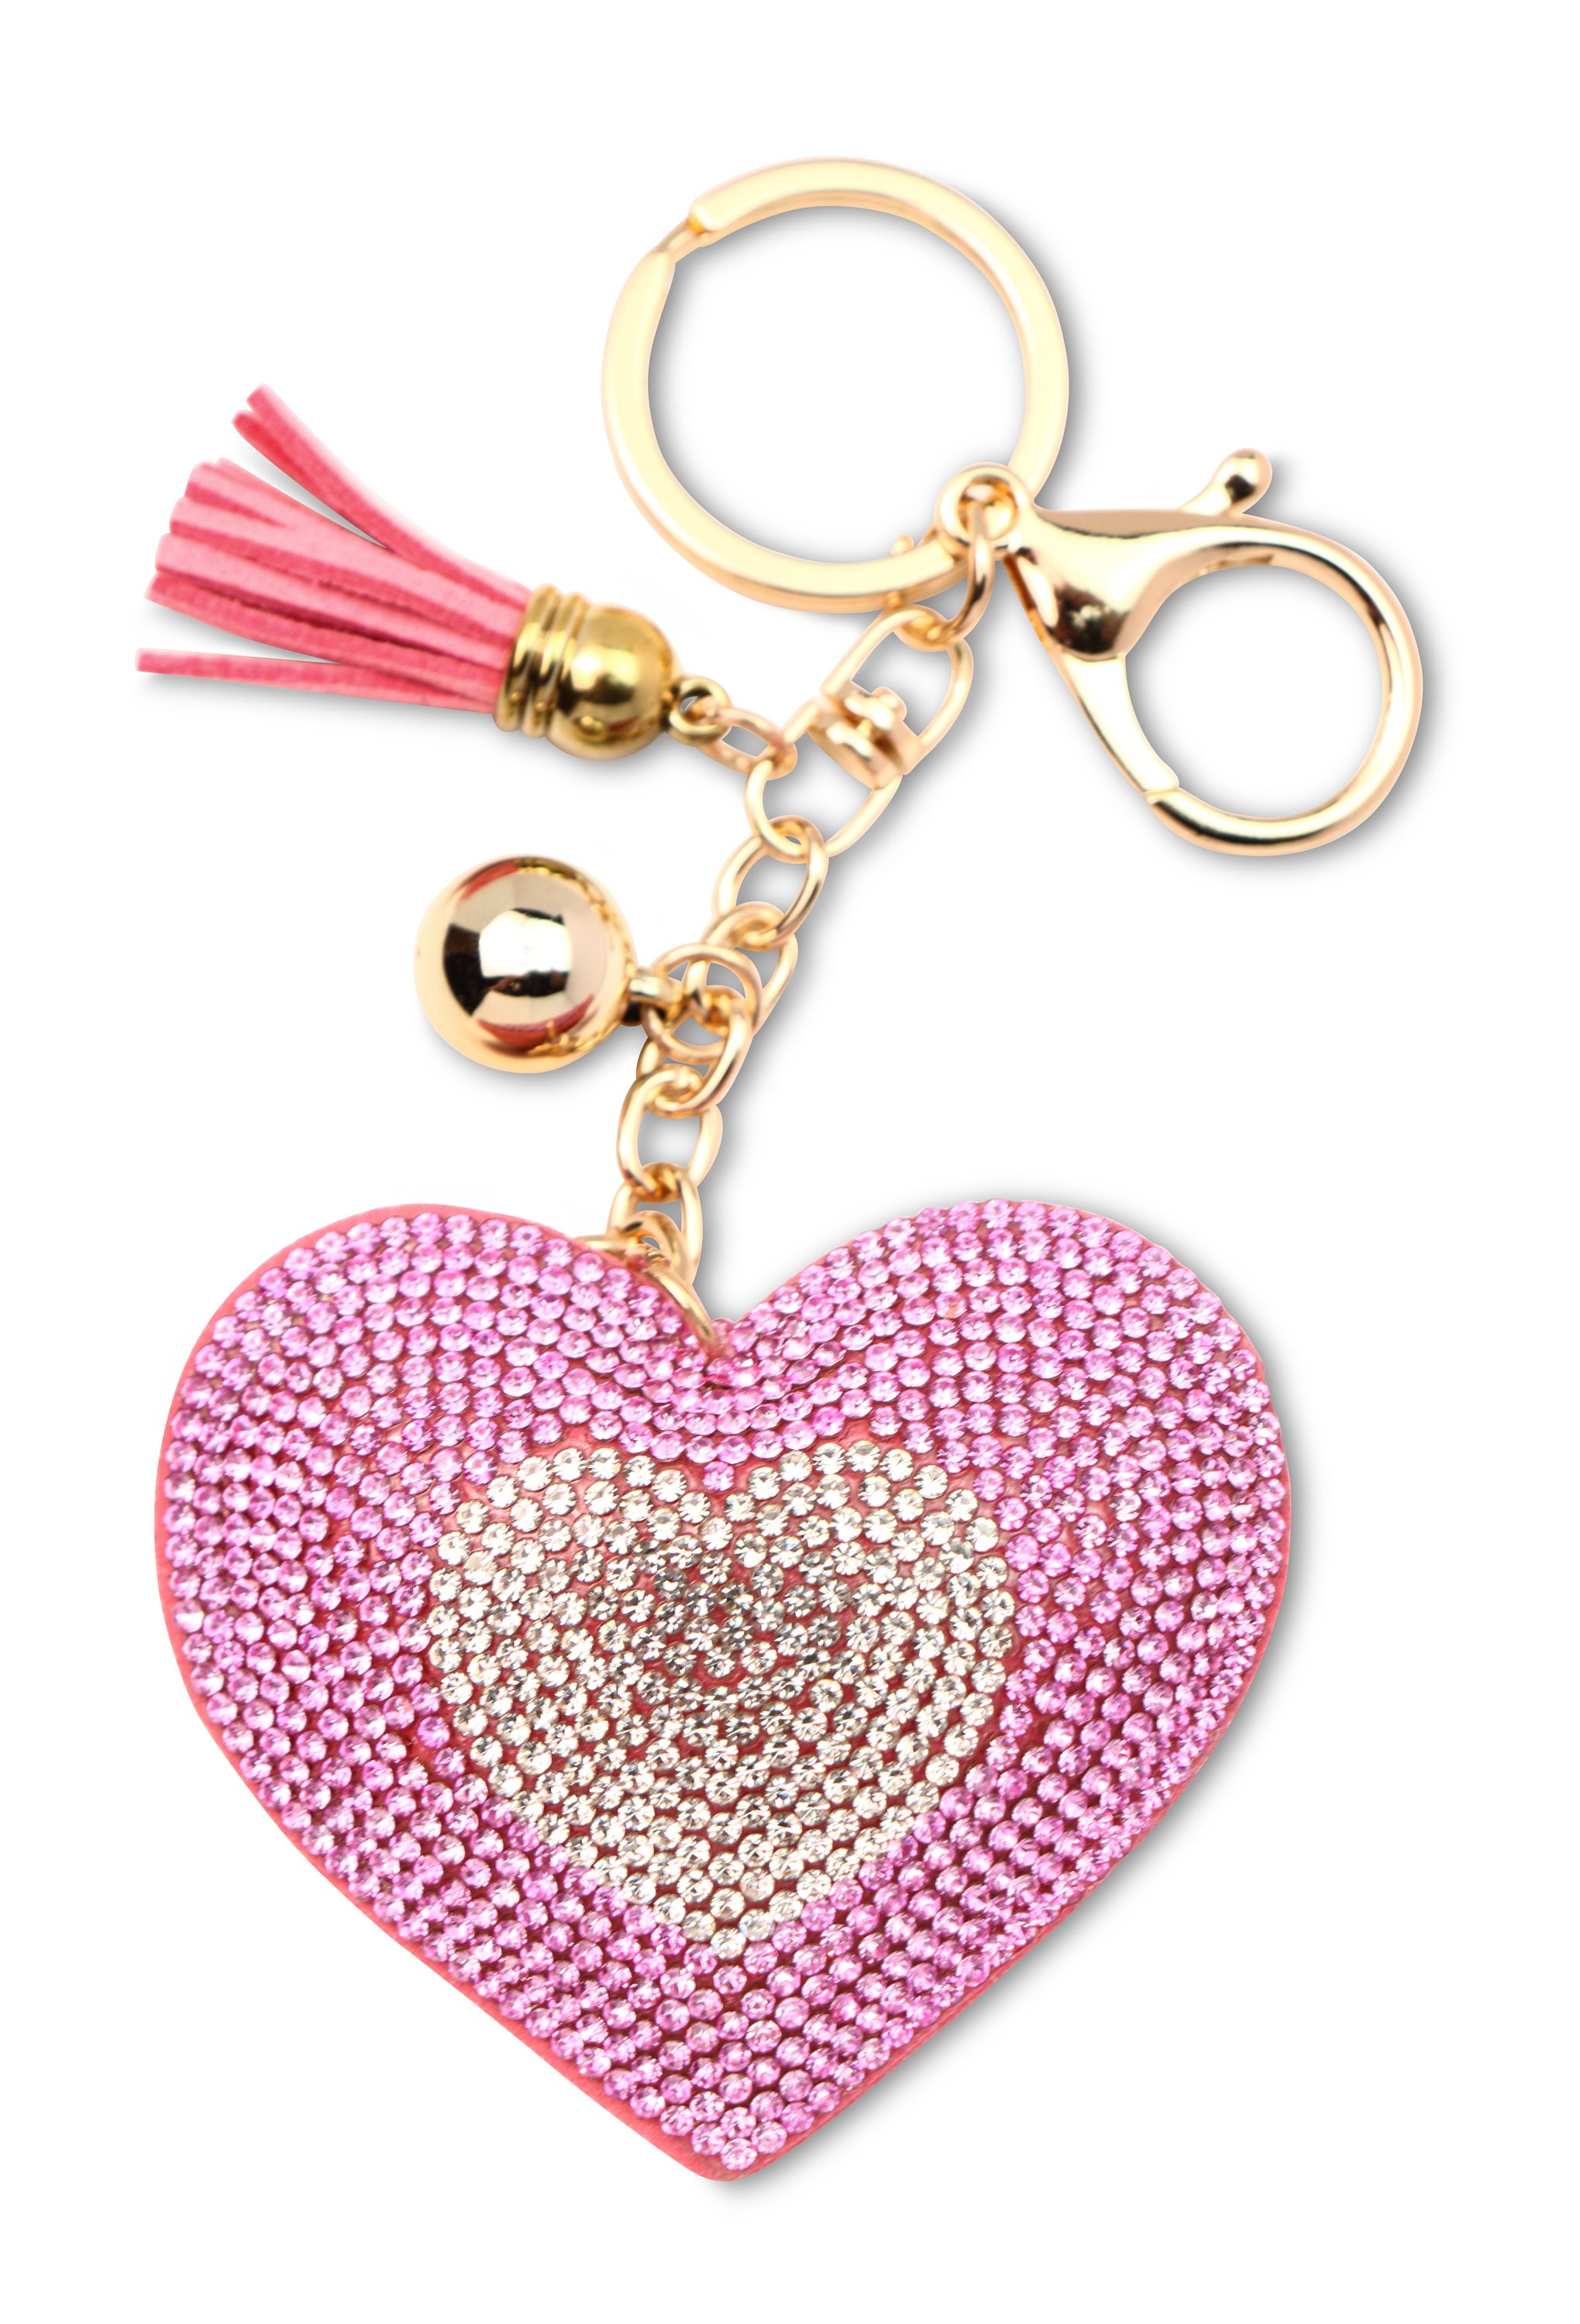 Cristal amour coeur femmes porte-clés cadeau dame fille Bling 3D